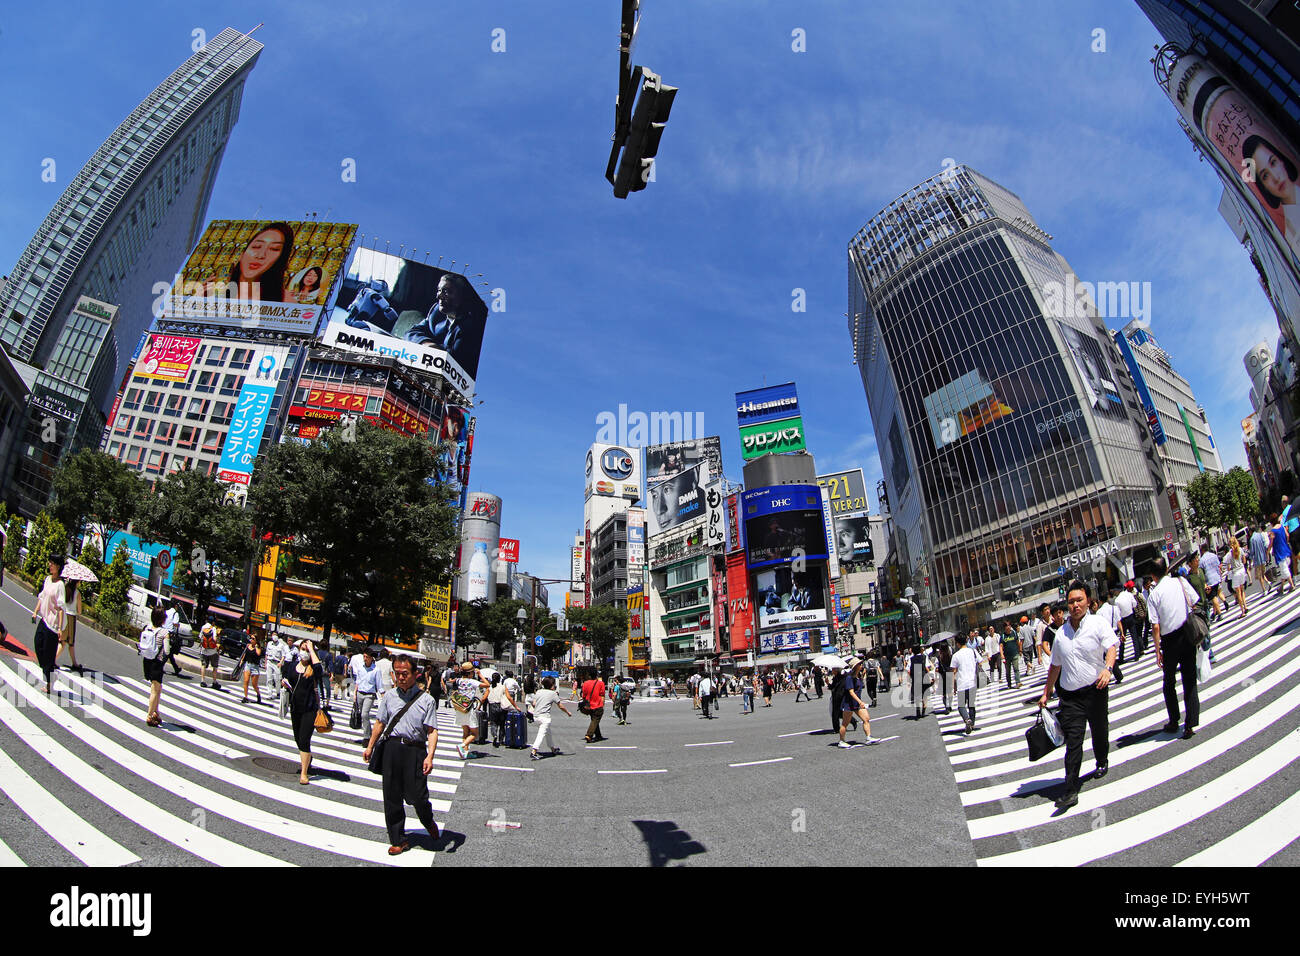 Les personnes qui traversent le passage pour piétons à l'intersection de Shibuya, Tokyo, Japon Banque D'Images